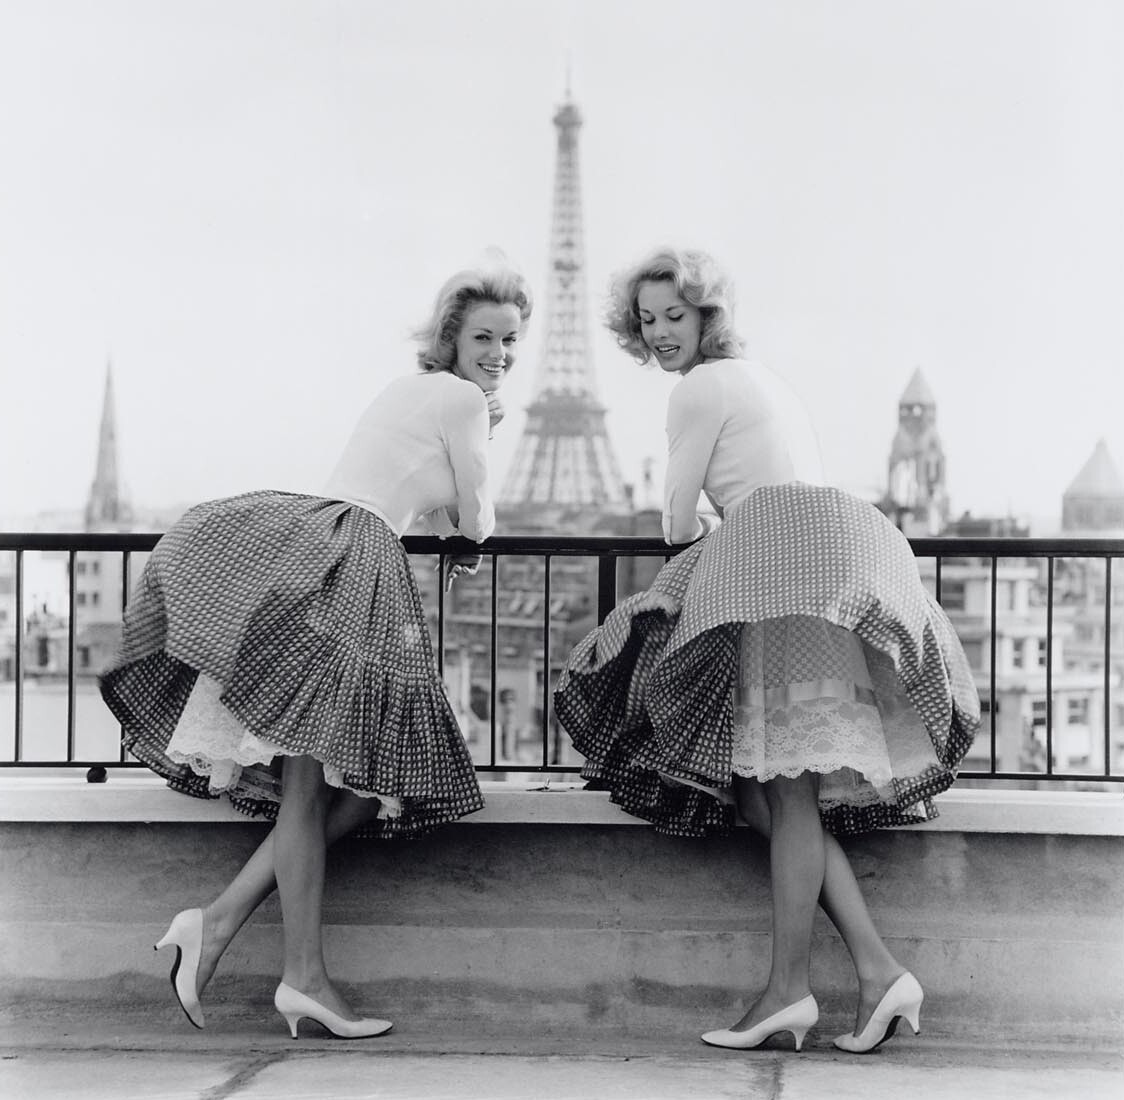 Сёстры-близнецы Элис и Эллен Кесслер в Париже, 1960. Фотограф Бен ван Меерендонк